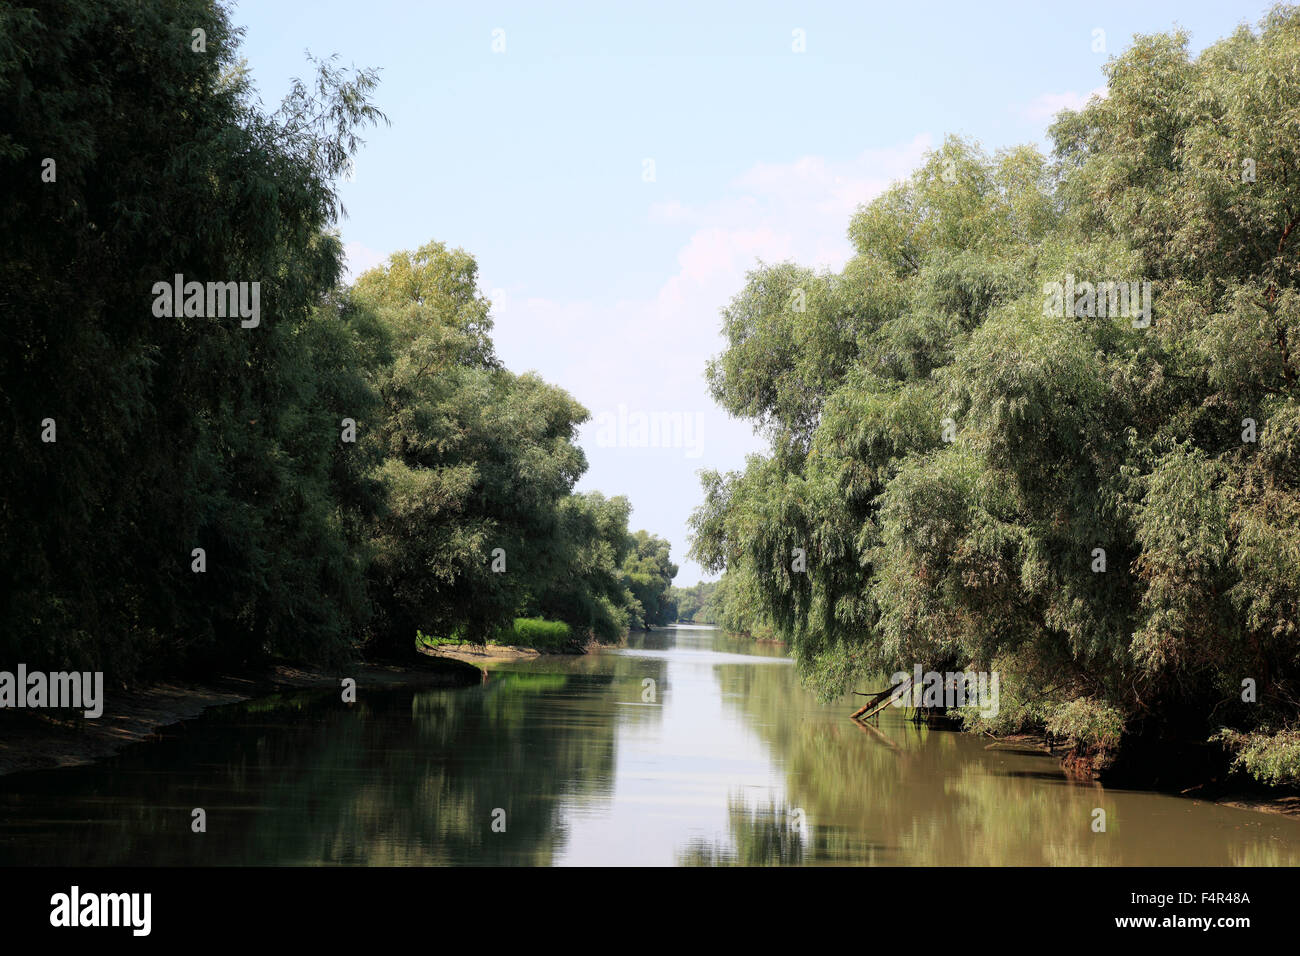 Danube Delta Biosphere Reserve, near Tulcea, Romania Stock Photo